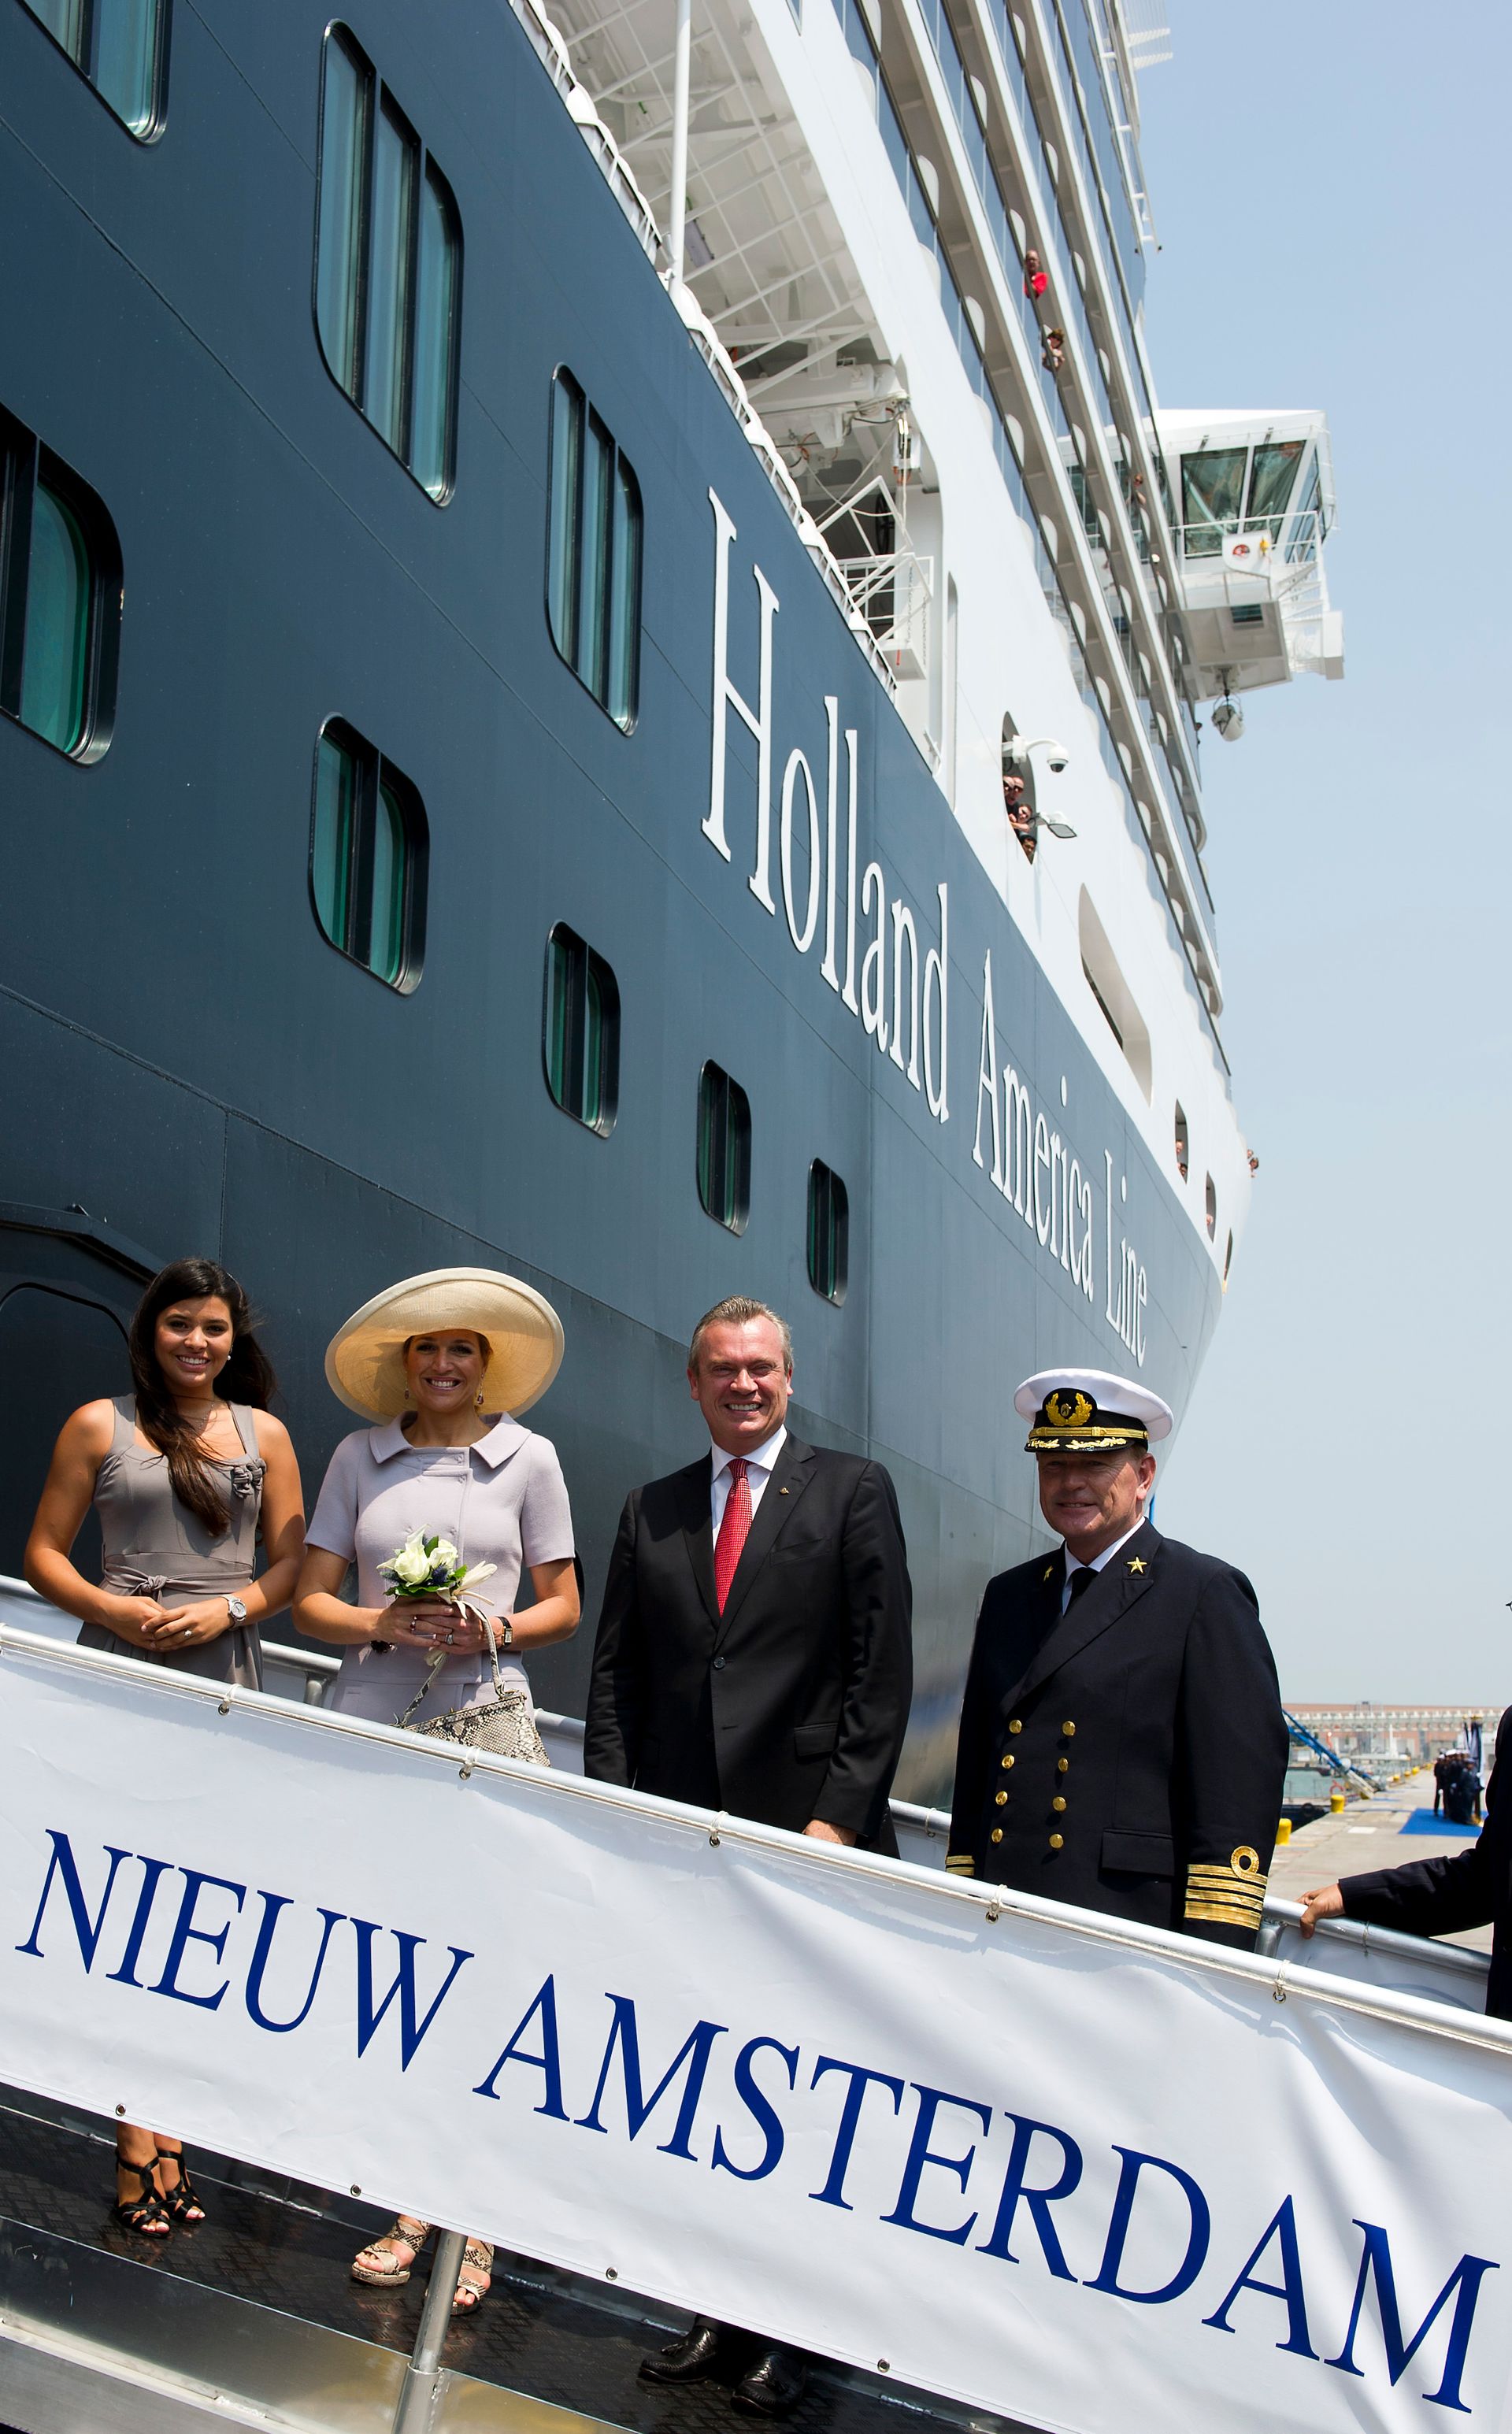 (Toen nog) prinses Máxima was in 2010 in Venetië. Ze bezocht de Italiaanse stad om het cruiseschip de Nieuw Amsterdam te dopen.